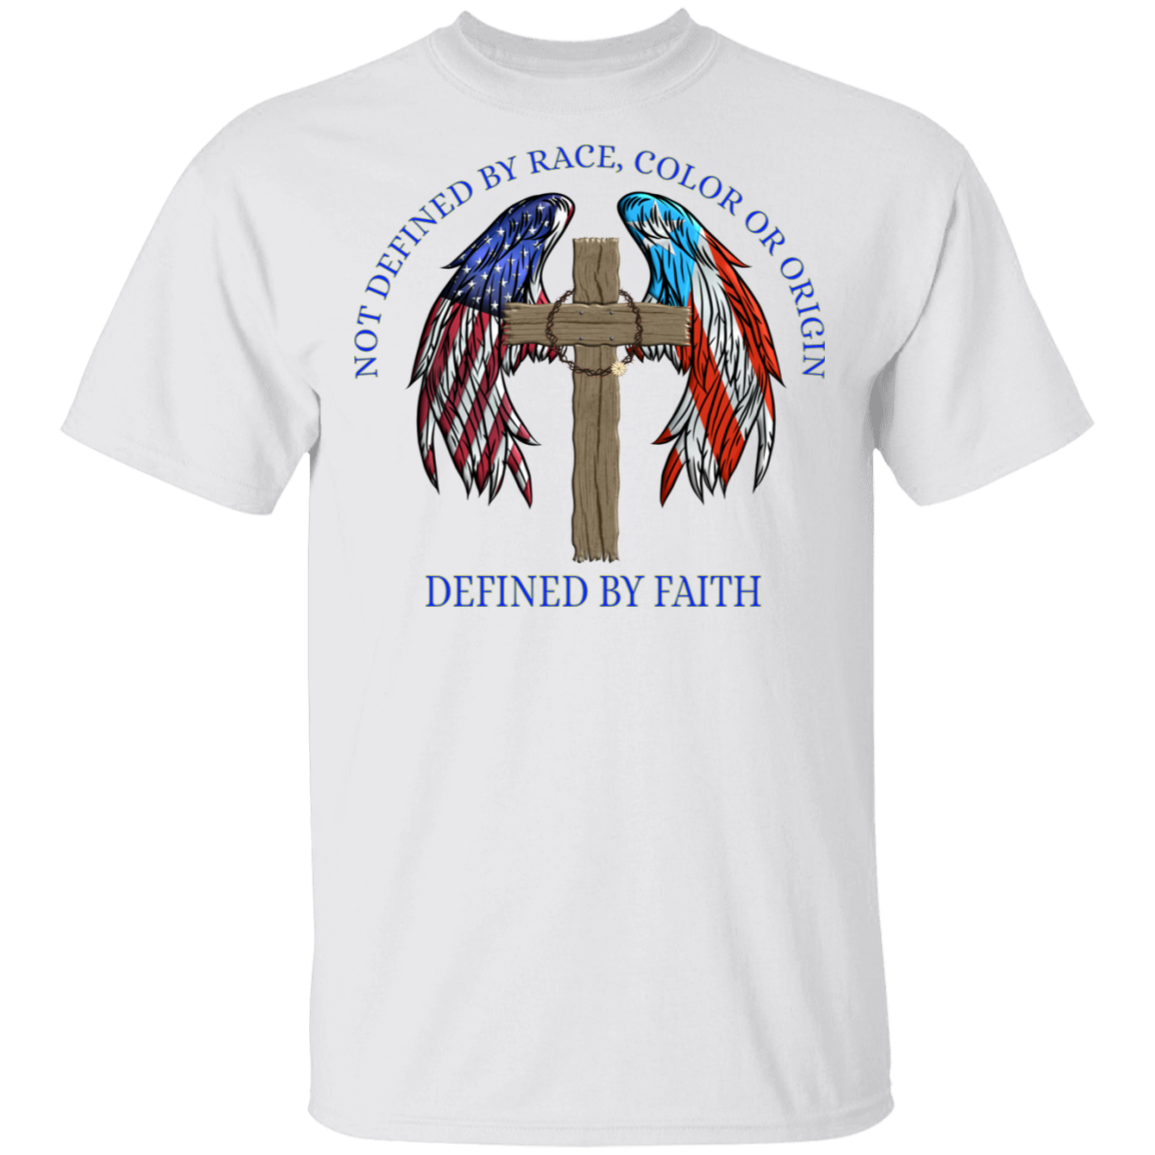 Defined by Faith 5.3 oz. T-Shirt